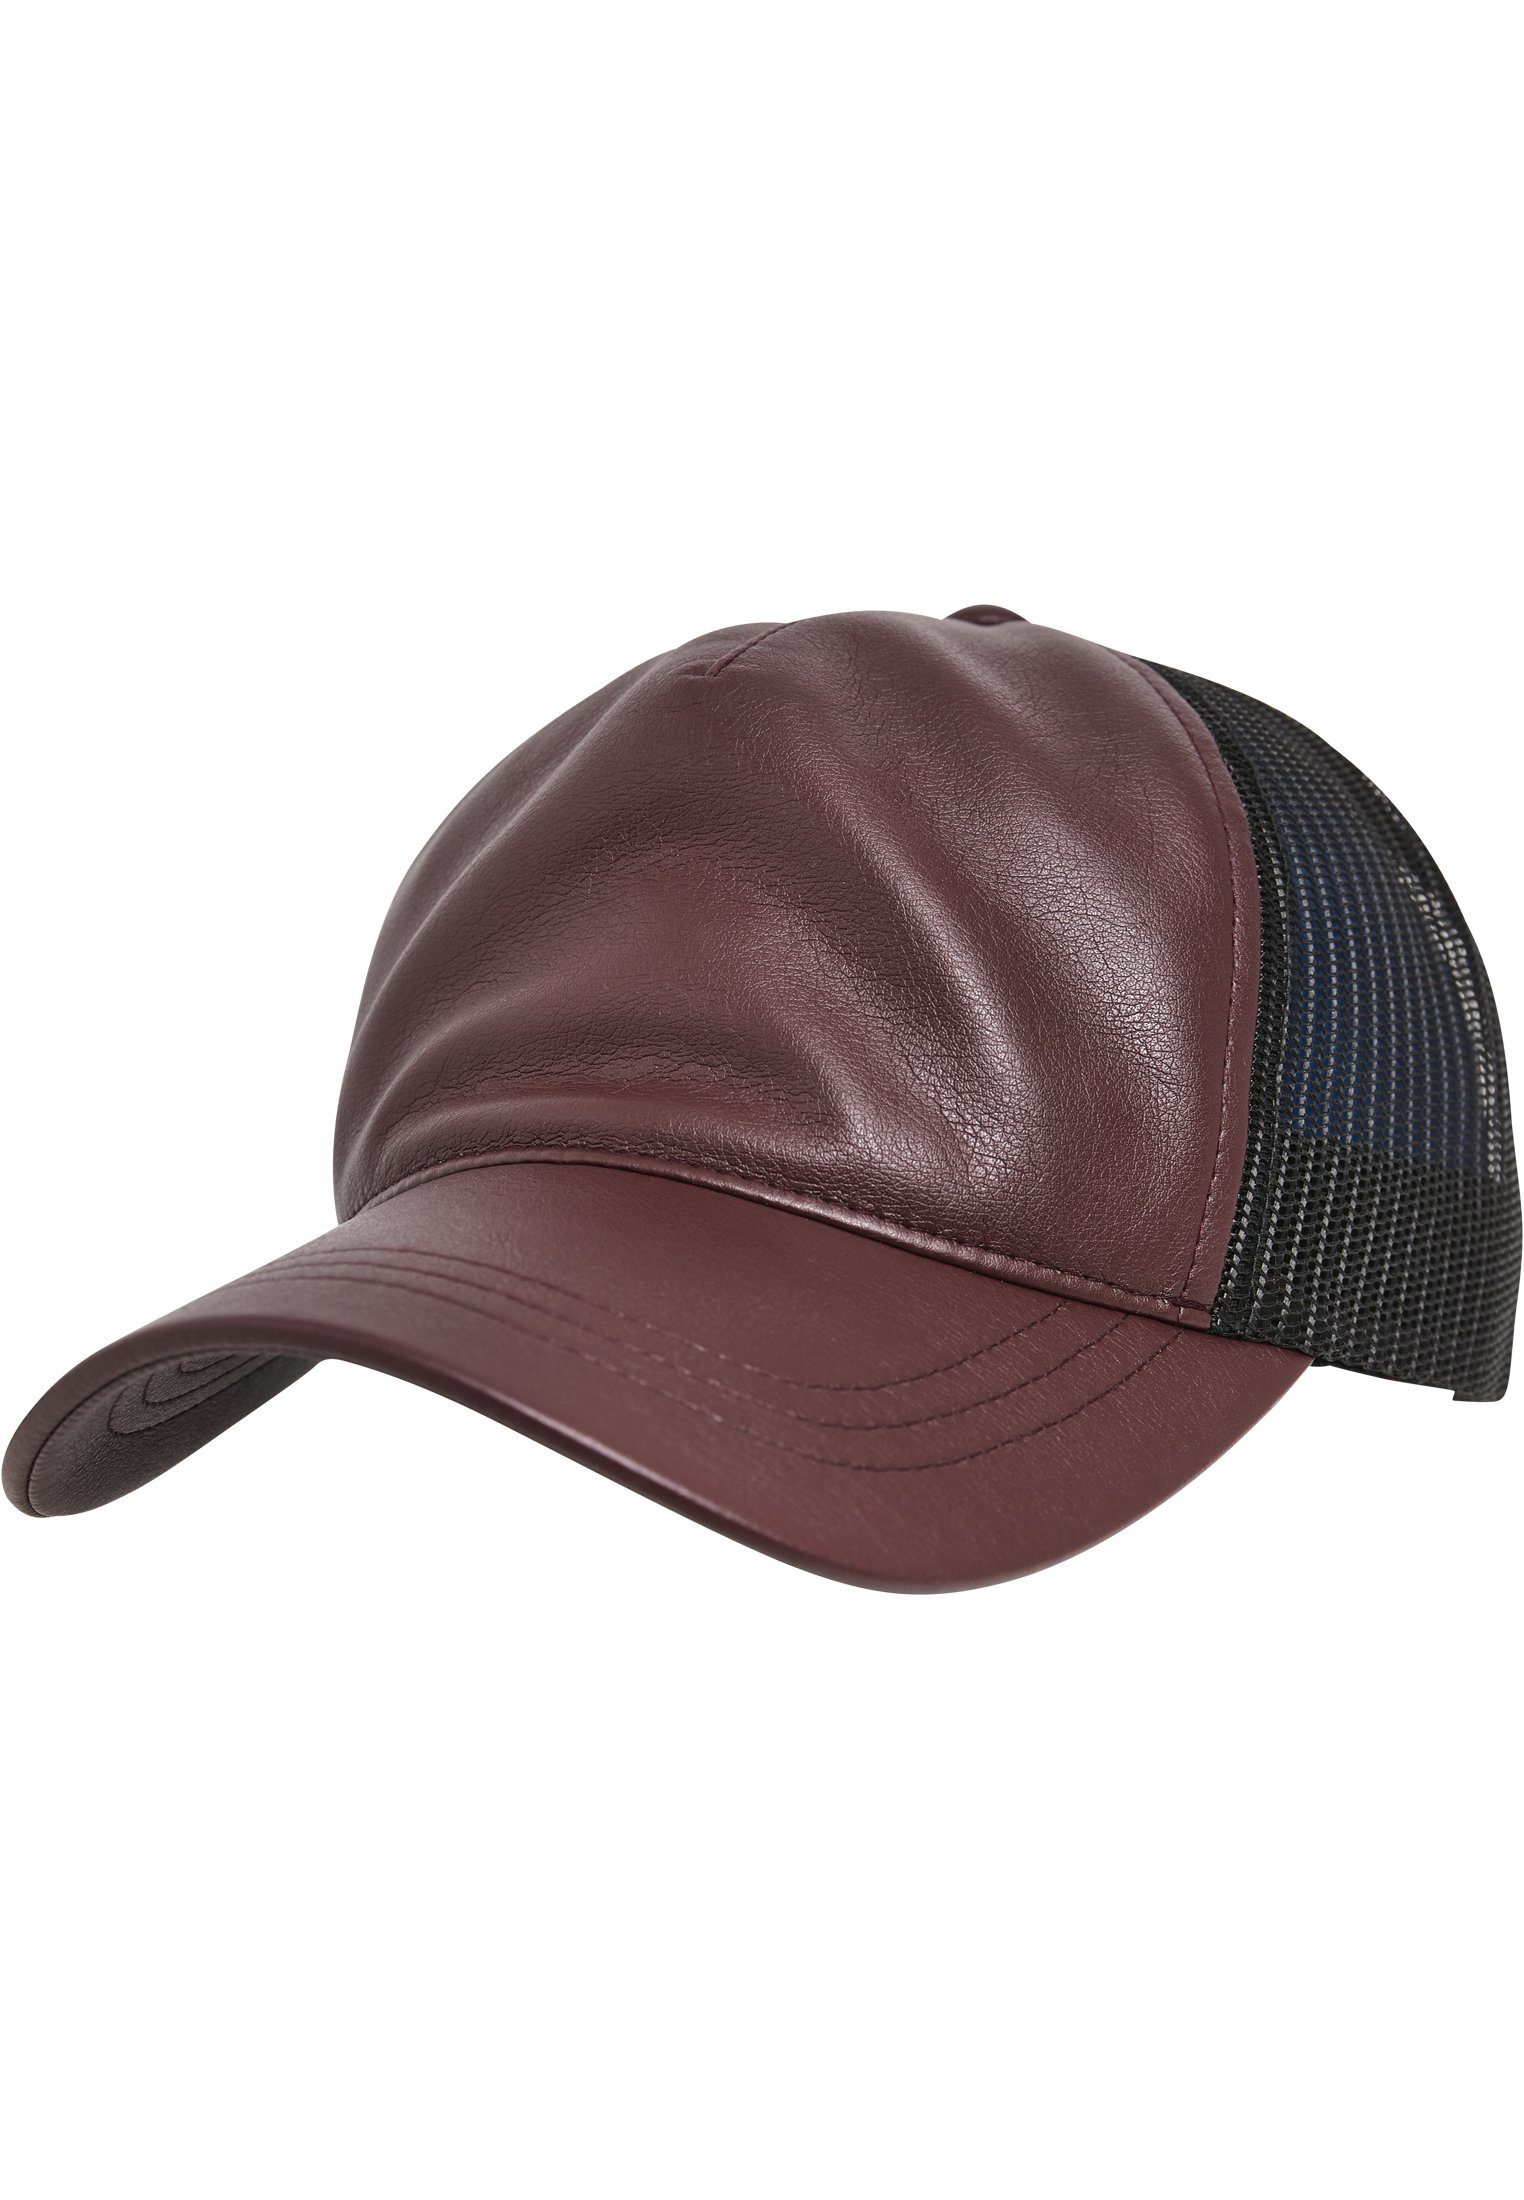 Trucker Flexfit Leather maroon/black Synthetic Cap Trucker Flex